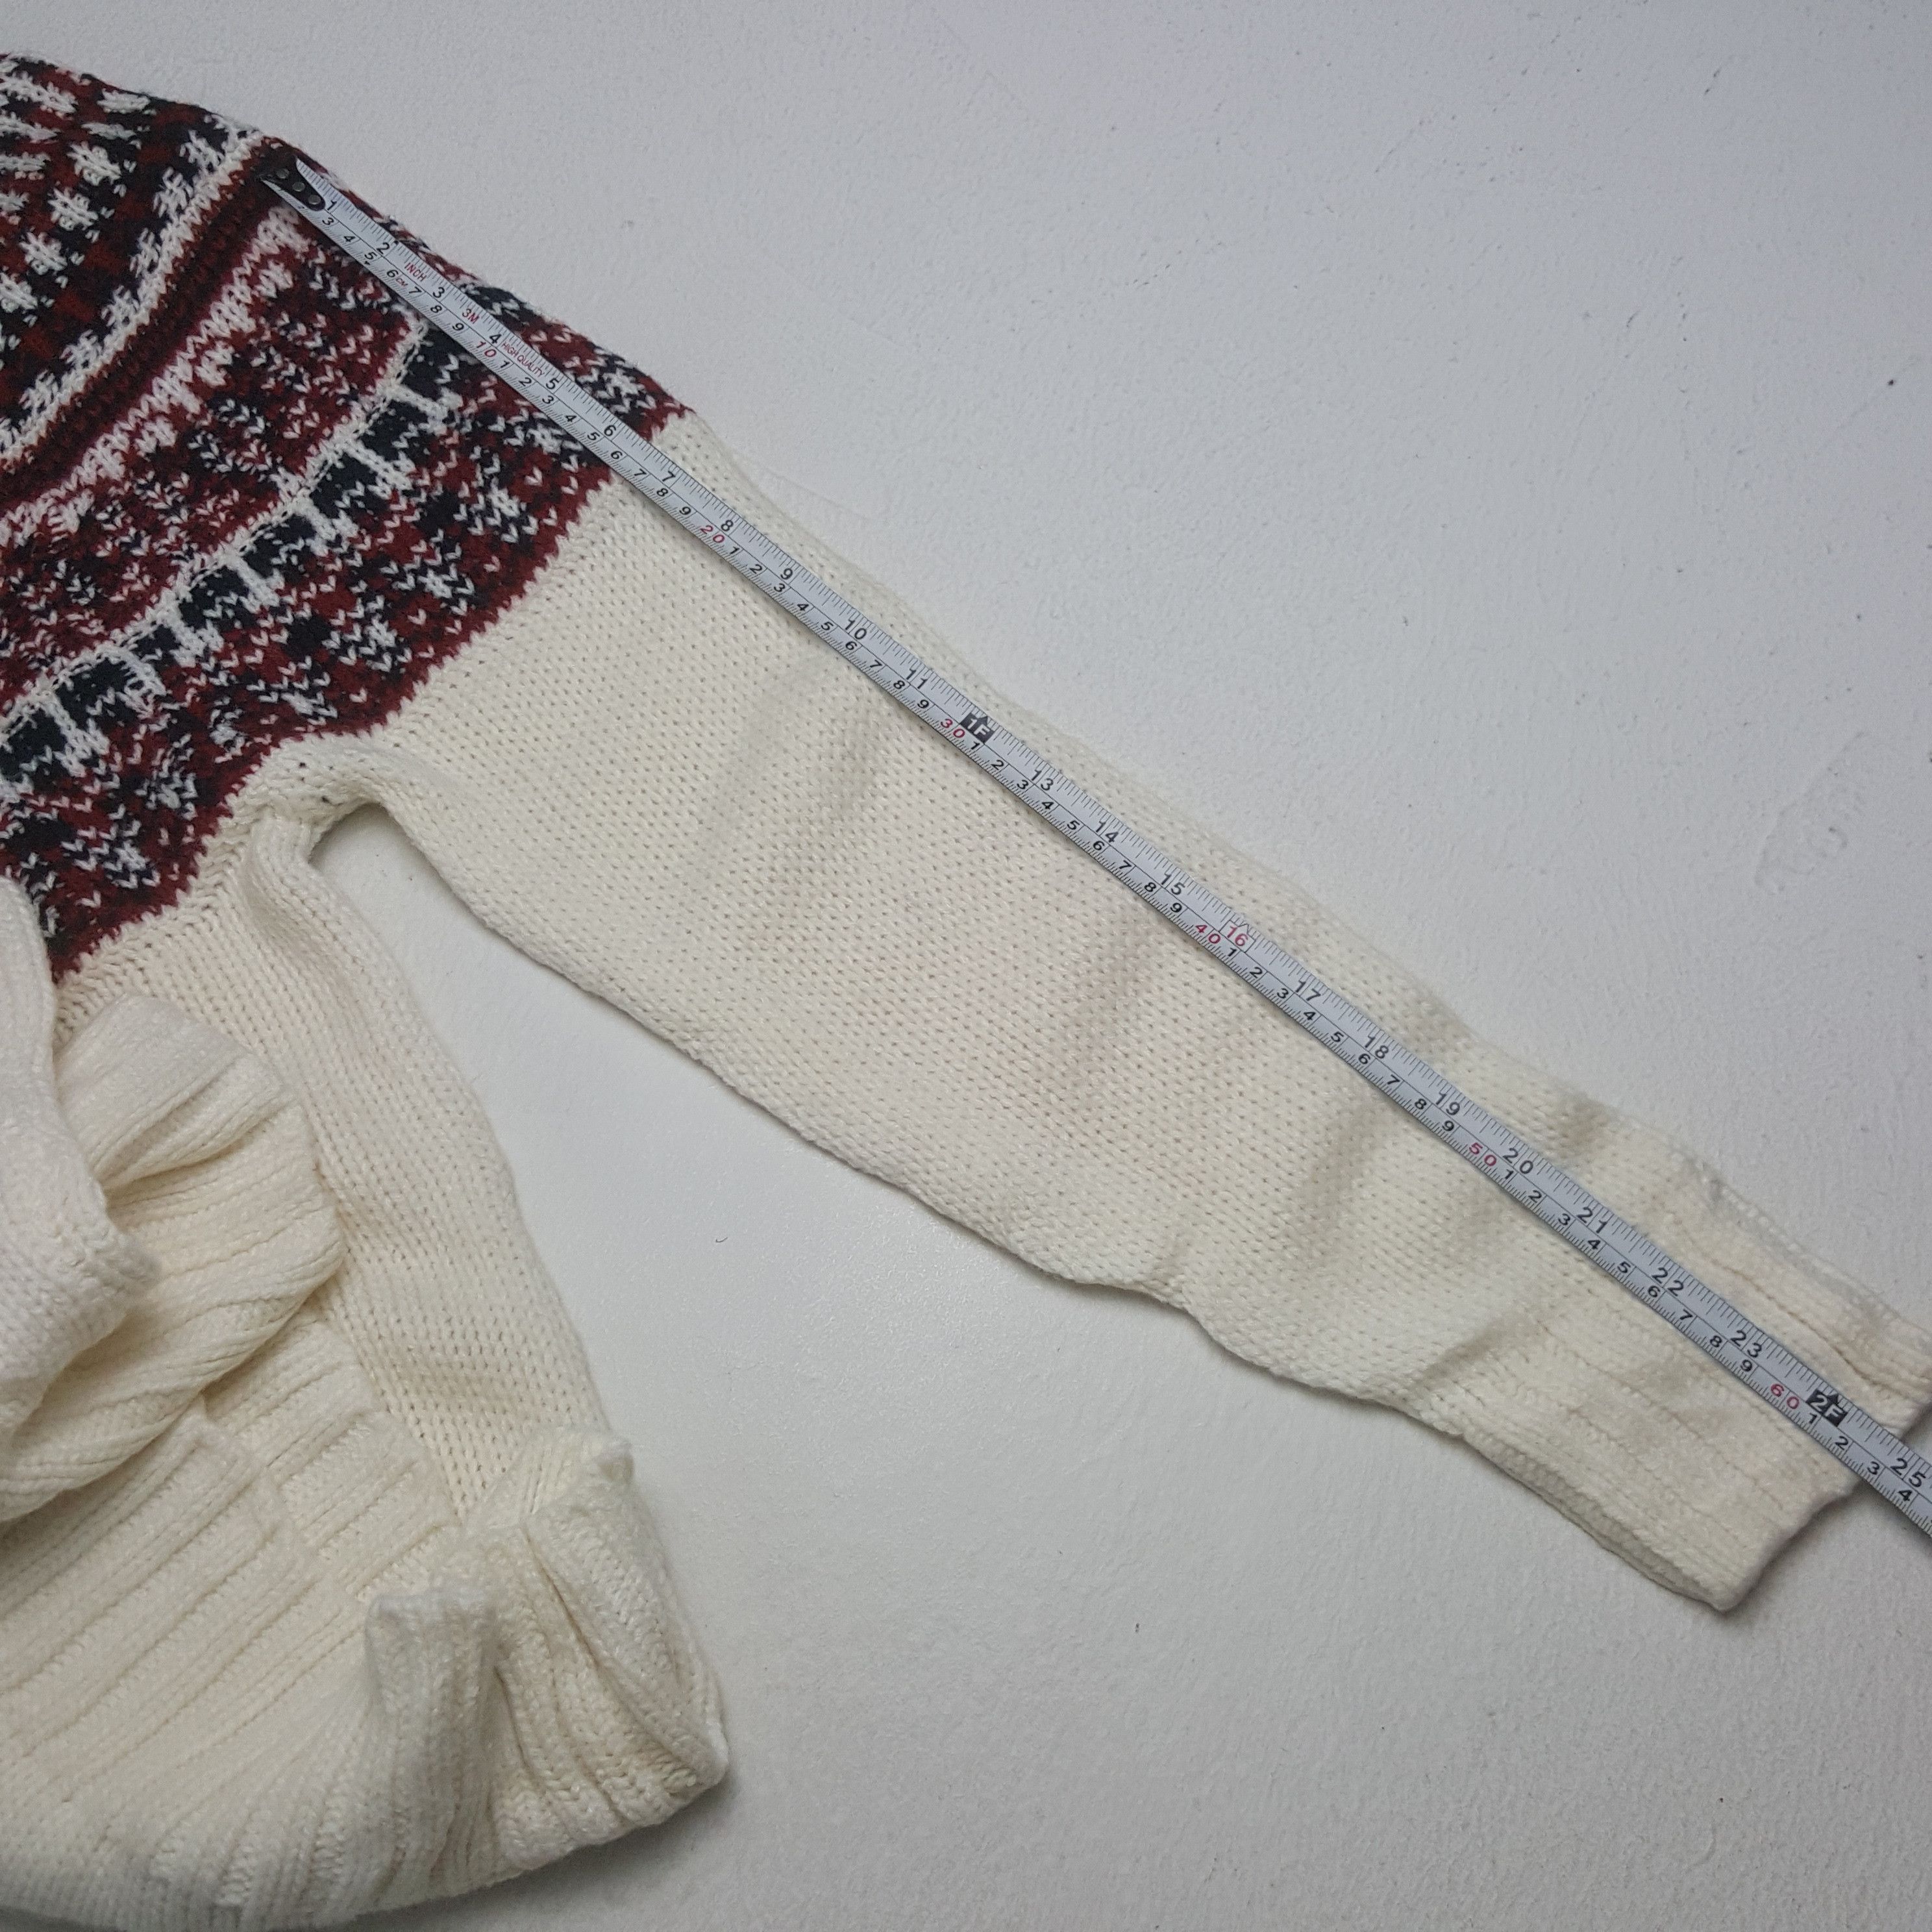 Vintage Vintage Gu Japan Knitwear Sweater Size US XS / EU 42 / 0 - 5 Thumbnail